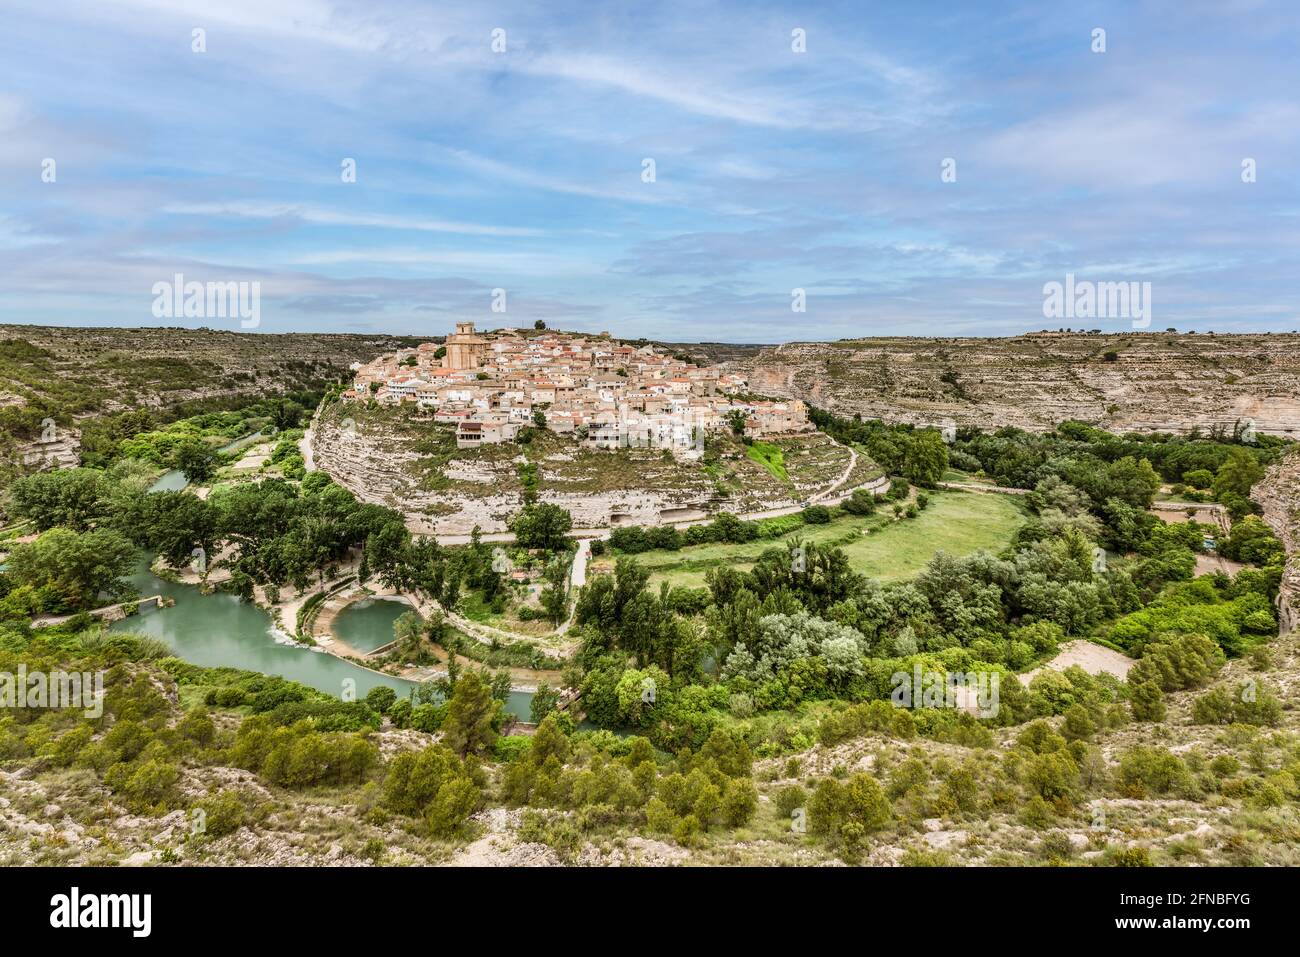 Vista panorámica del pequeño pueblo de Jorquera en el meandro del río Jucar, provincia de Albacete, España Foto de stock